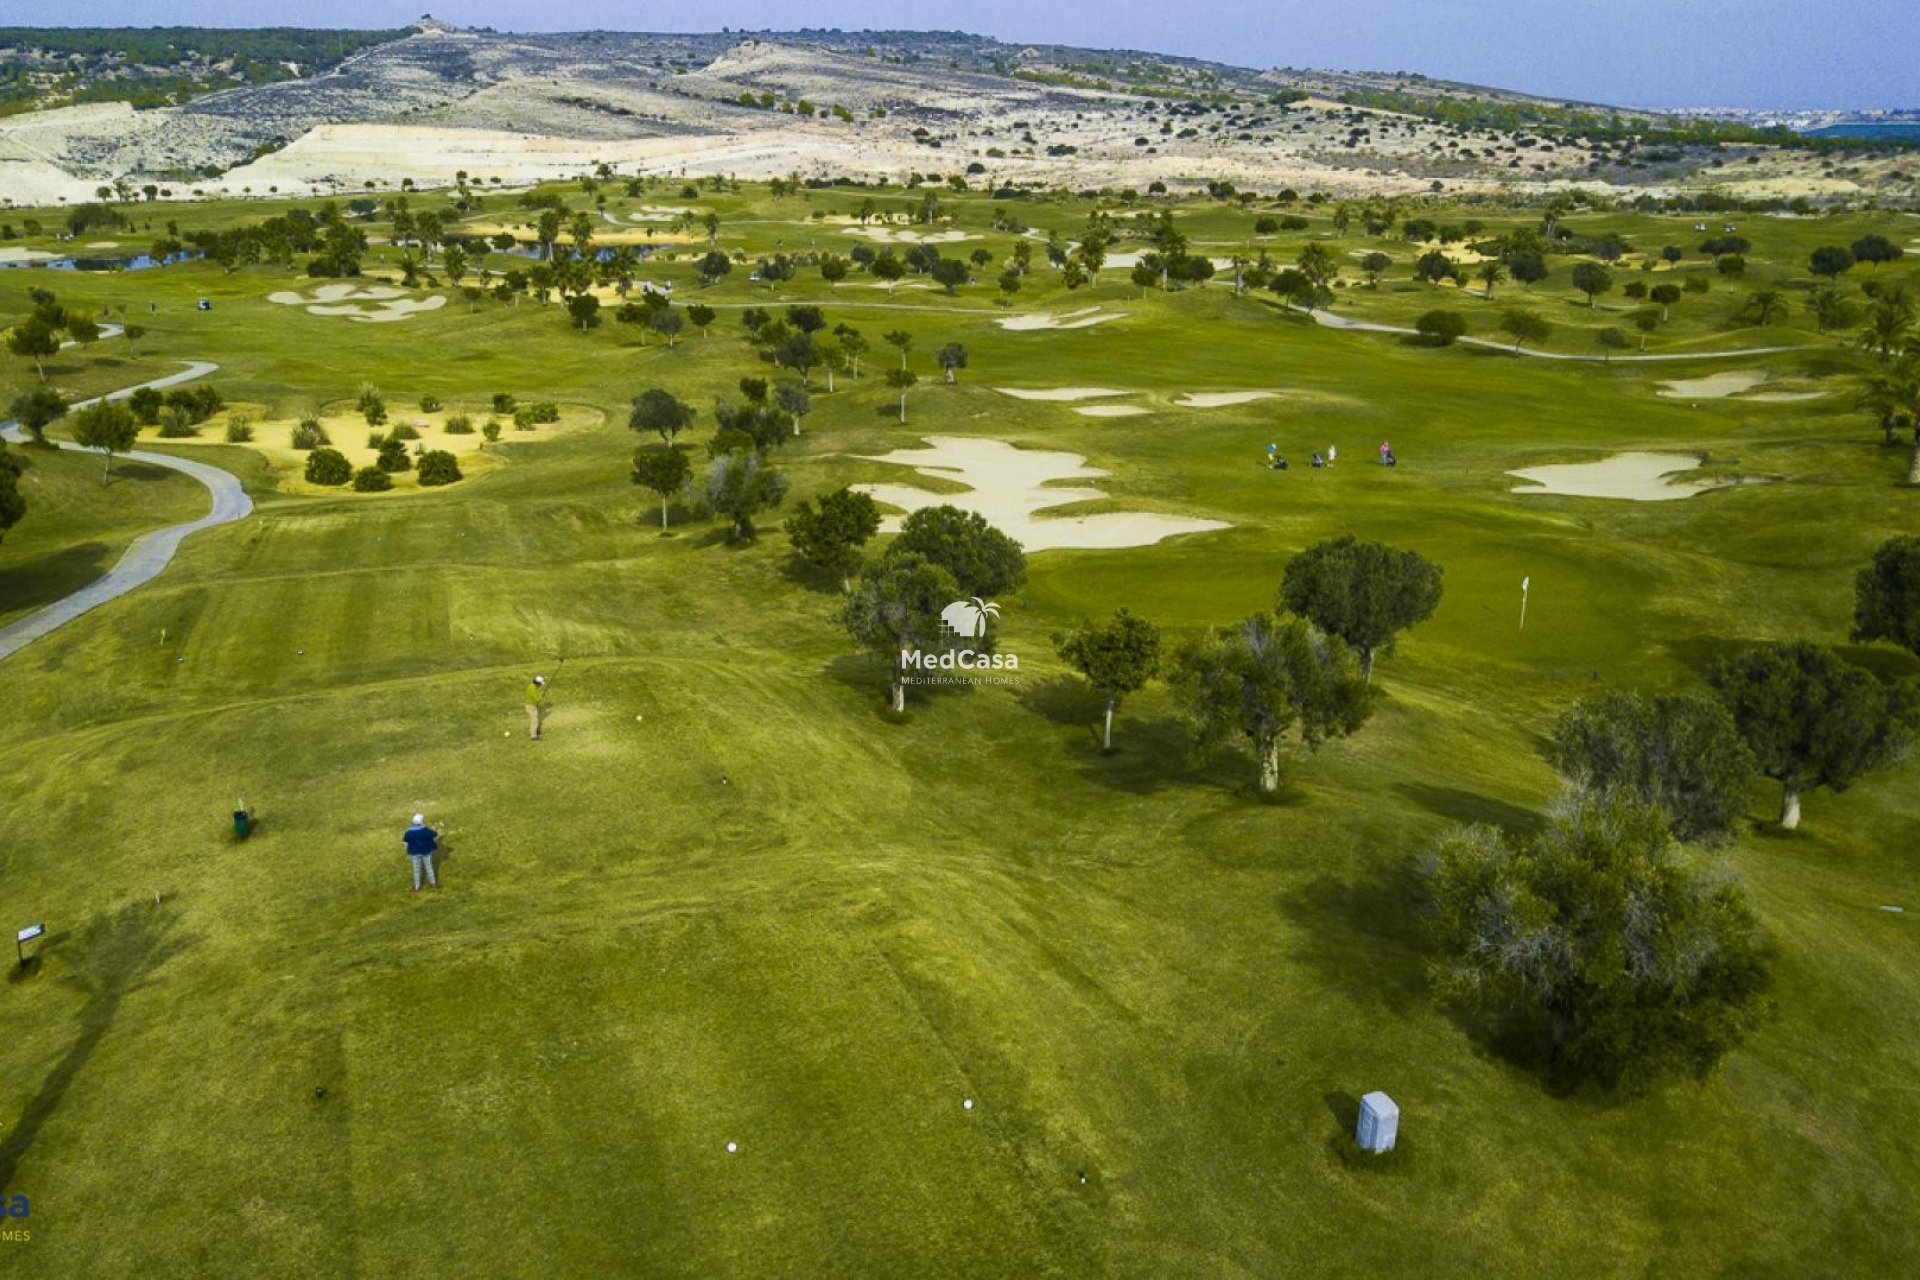 Obra nueva - Semi pareado -
Golf Vistabella